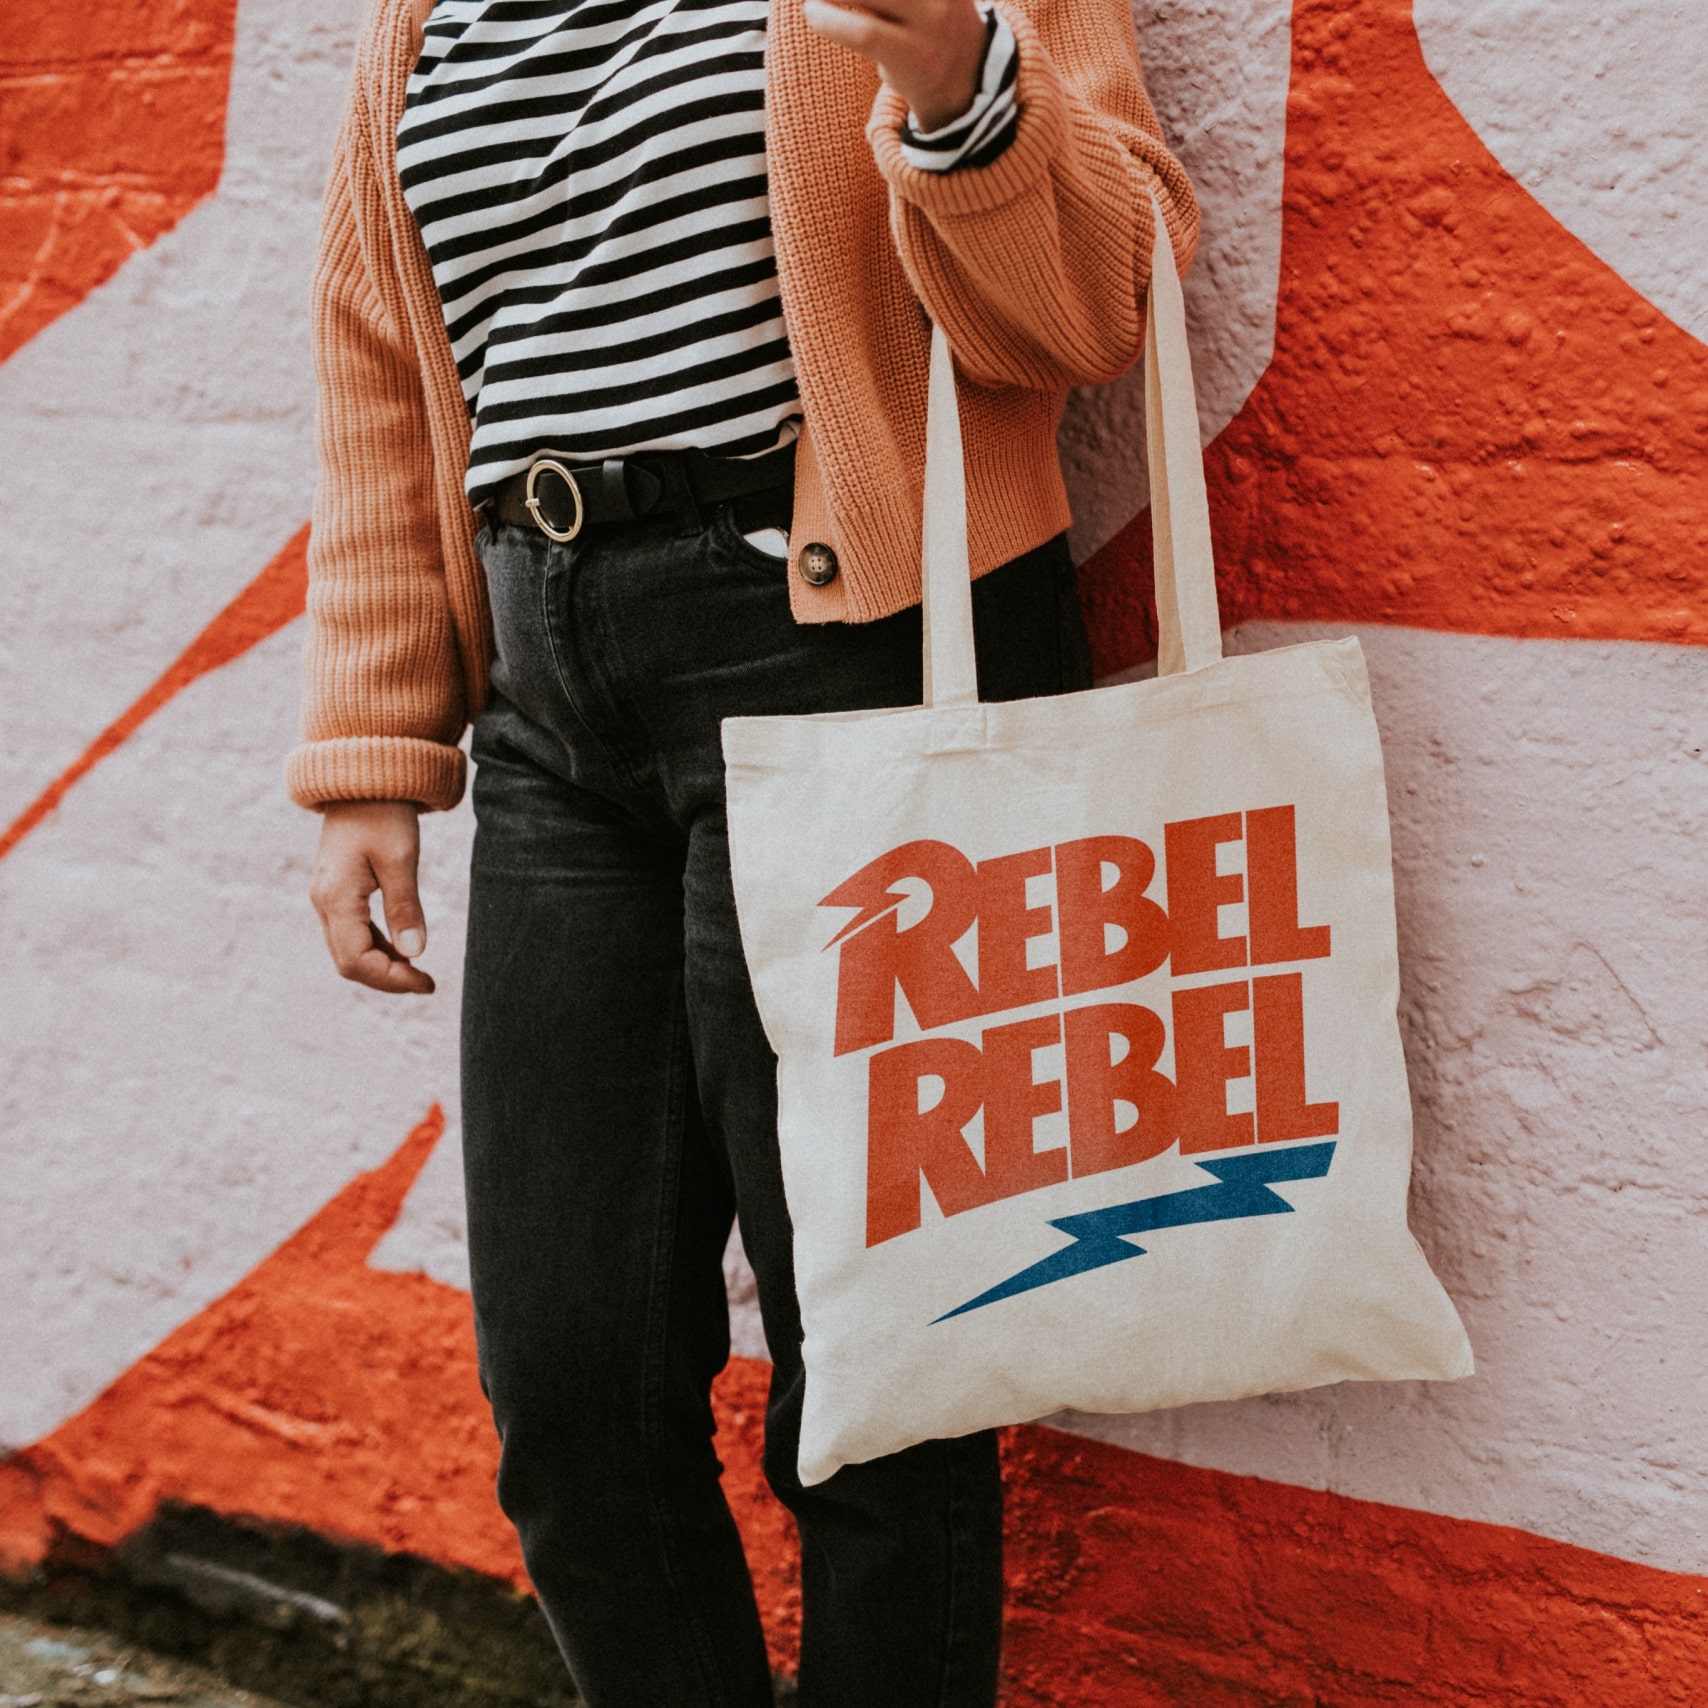 Custom “Rebel Rebel” tote bag.